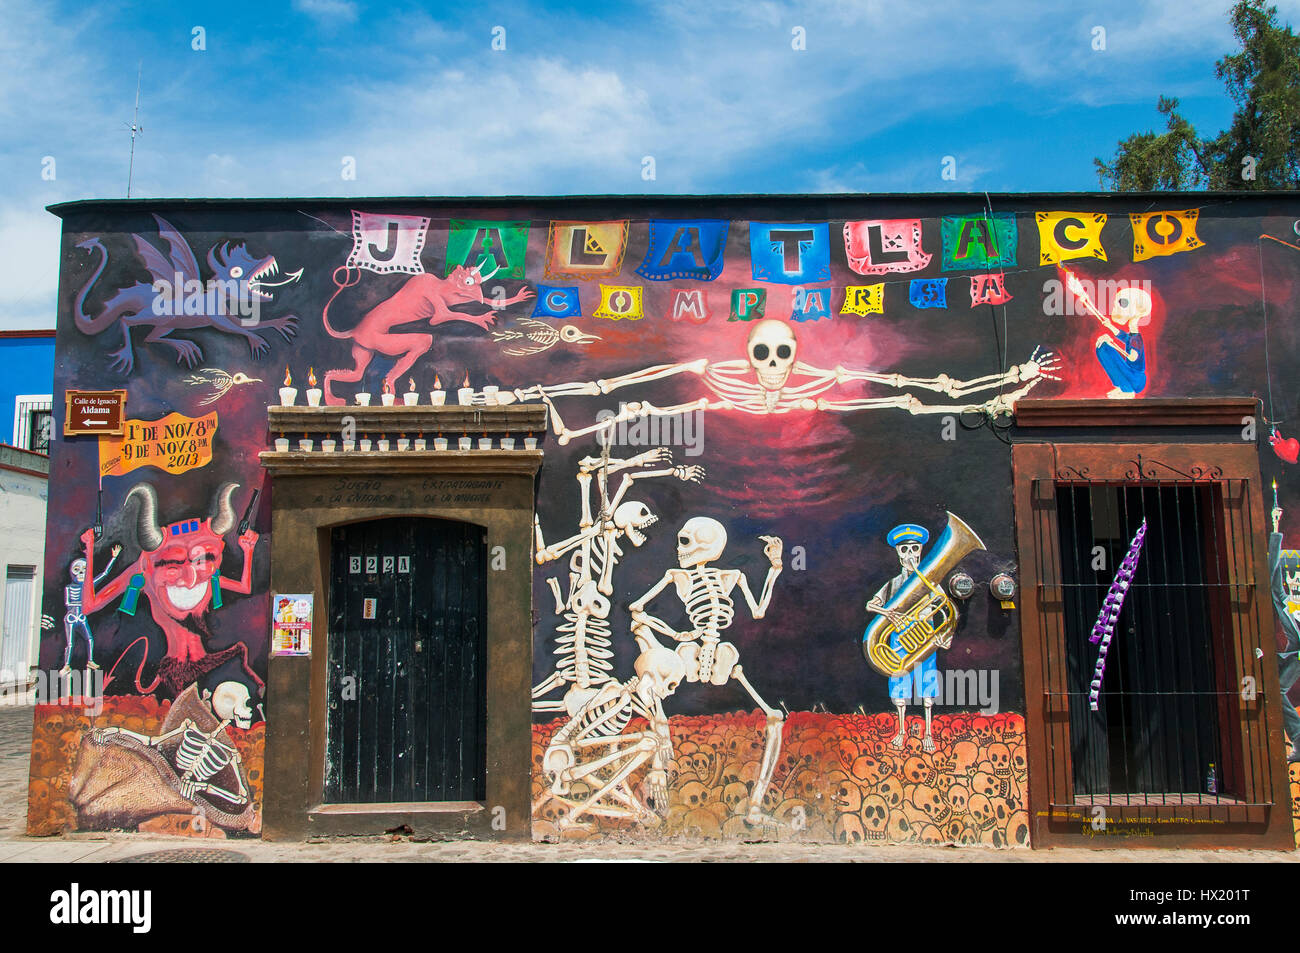 Murales, Wandgemälde mit Skeletten, mexikanischer Totenkult, Weltkulturerbe Oaxaca, Mexiko Foto Stock